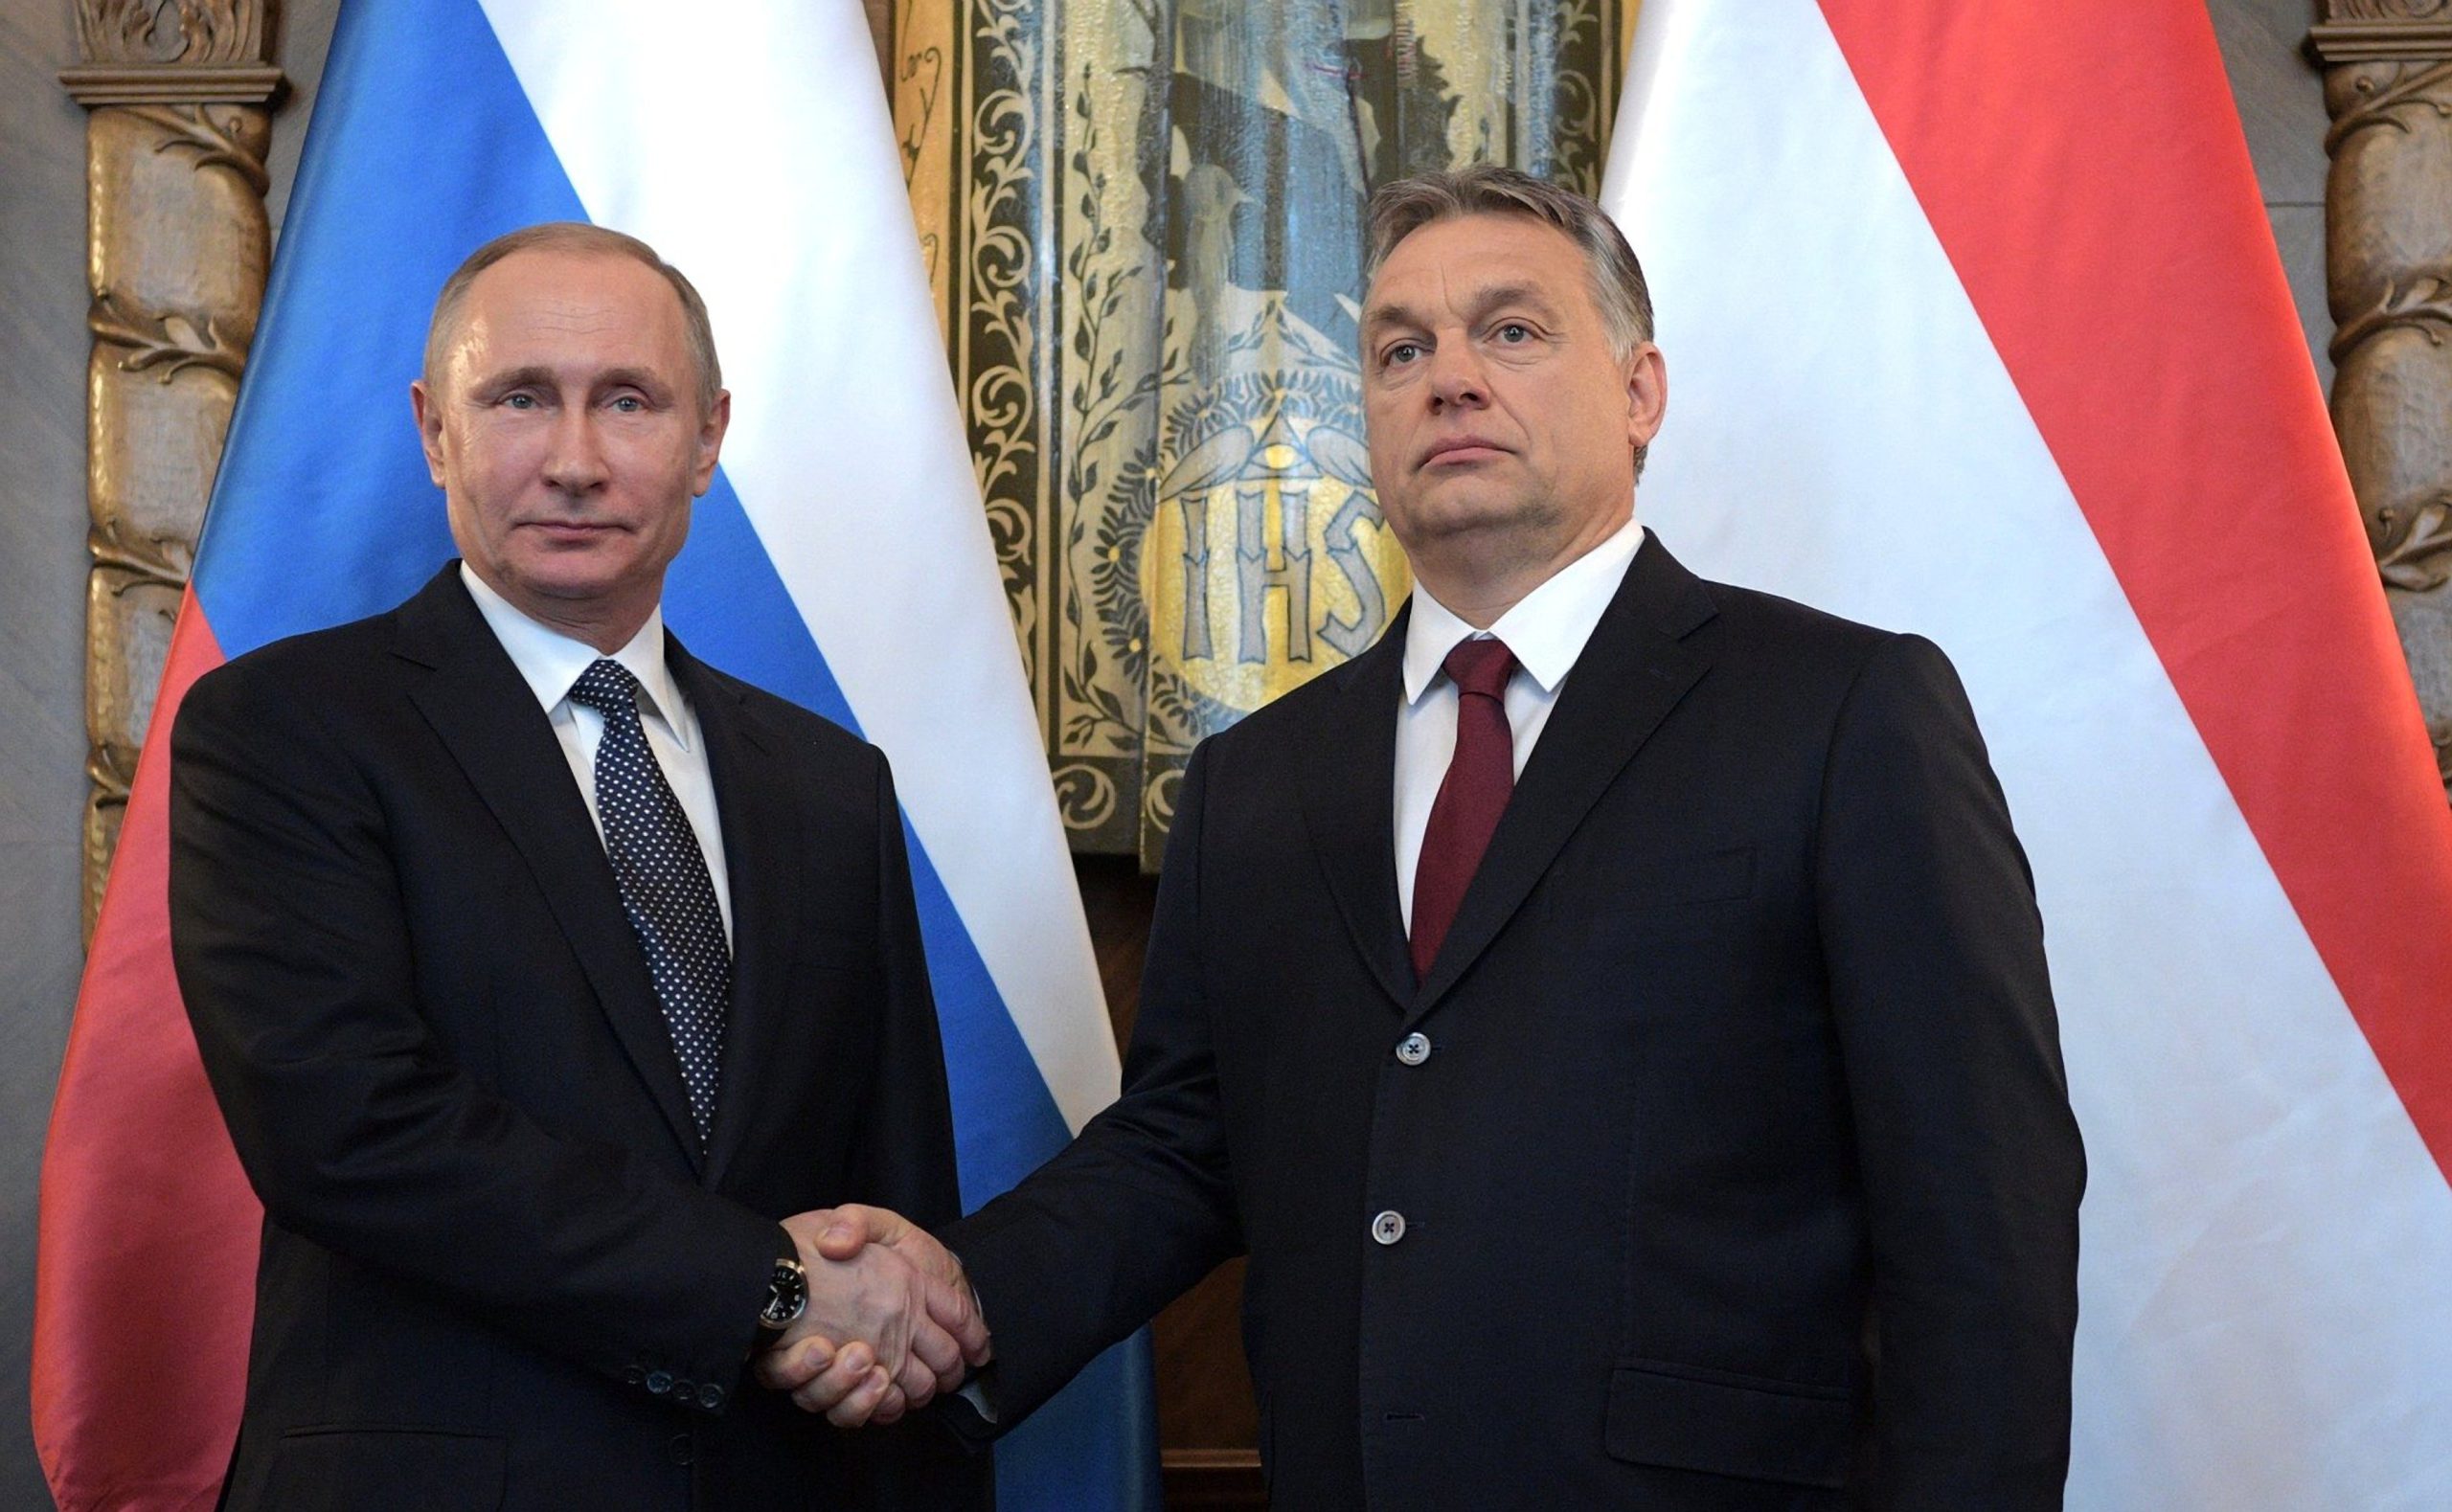  Discurs halucinant al premierului ungar Viktor Orban: face scut în fața lui Putin și condamnă Europa pentru ajutorul dat Ucrainei